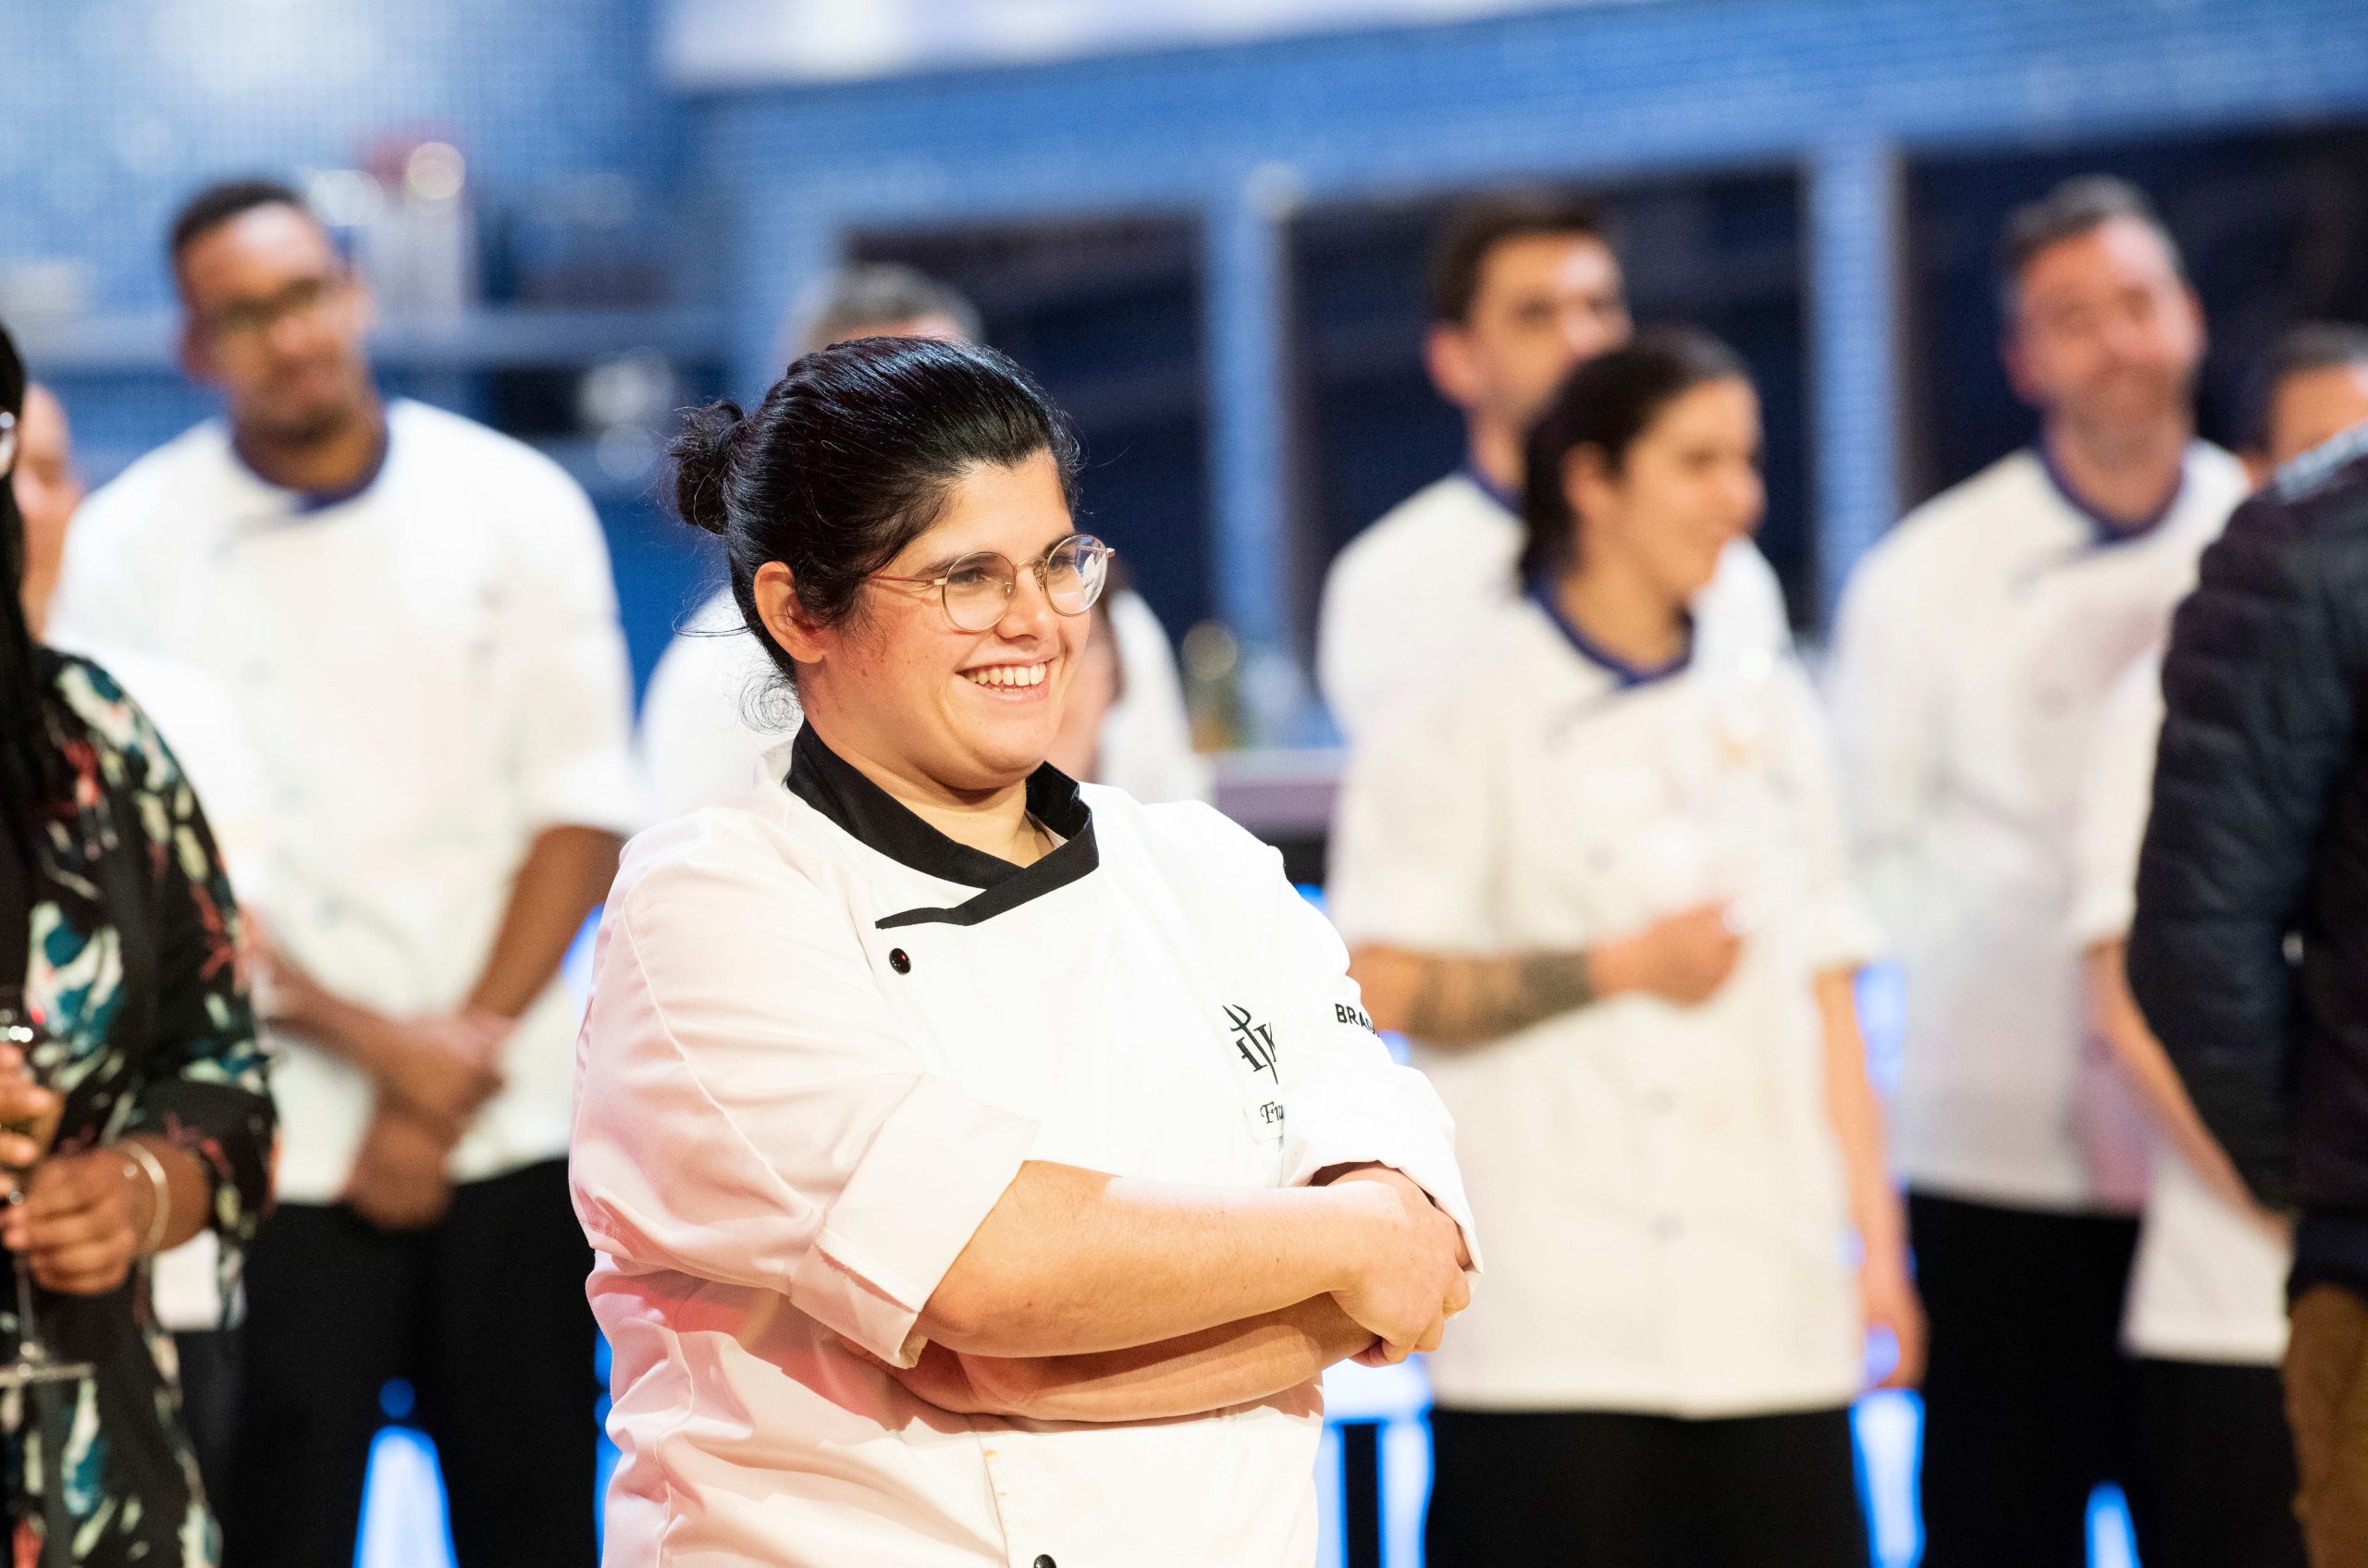 La final de Hell’s Kitchen Portugal se convierte en el programa más visto de la noche, ¡líder absoluto del prime time!